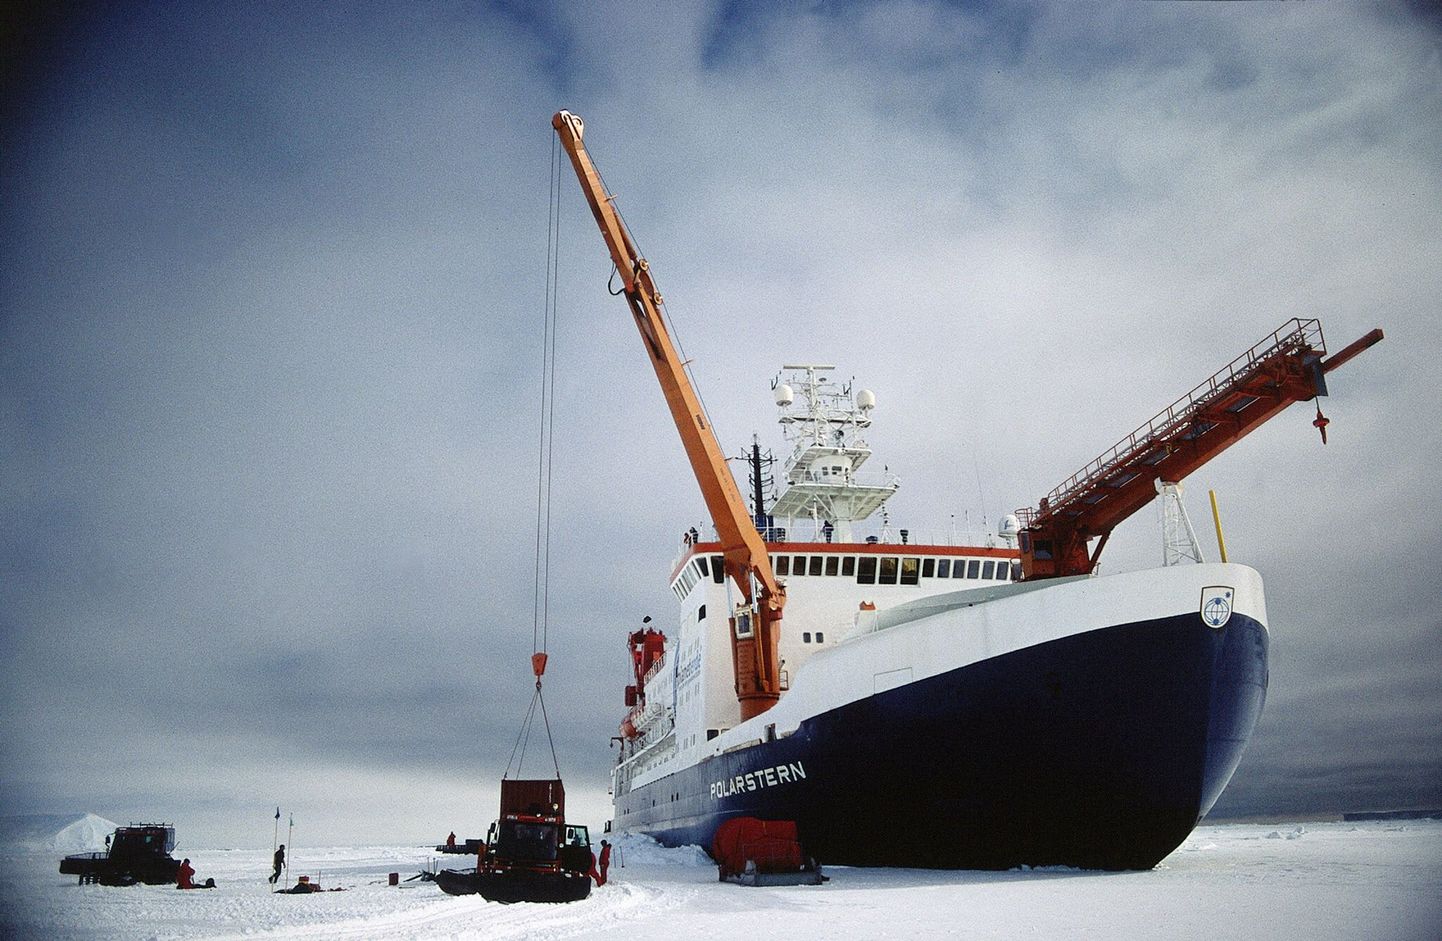 Saksa teadlaste uurimisalus Polarstern 2008. aastal. Nüüd plaanivad teadlased korrata sama alusega norra polaaruurija Fridtjof Nanseni legendaarset retke läbi Arktika jääväljade.